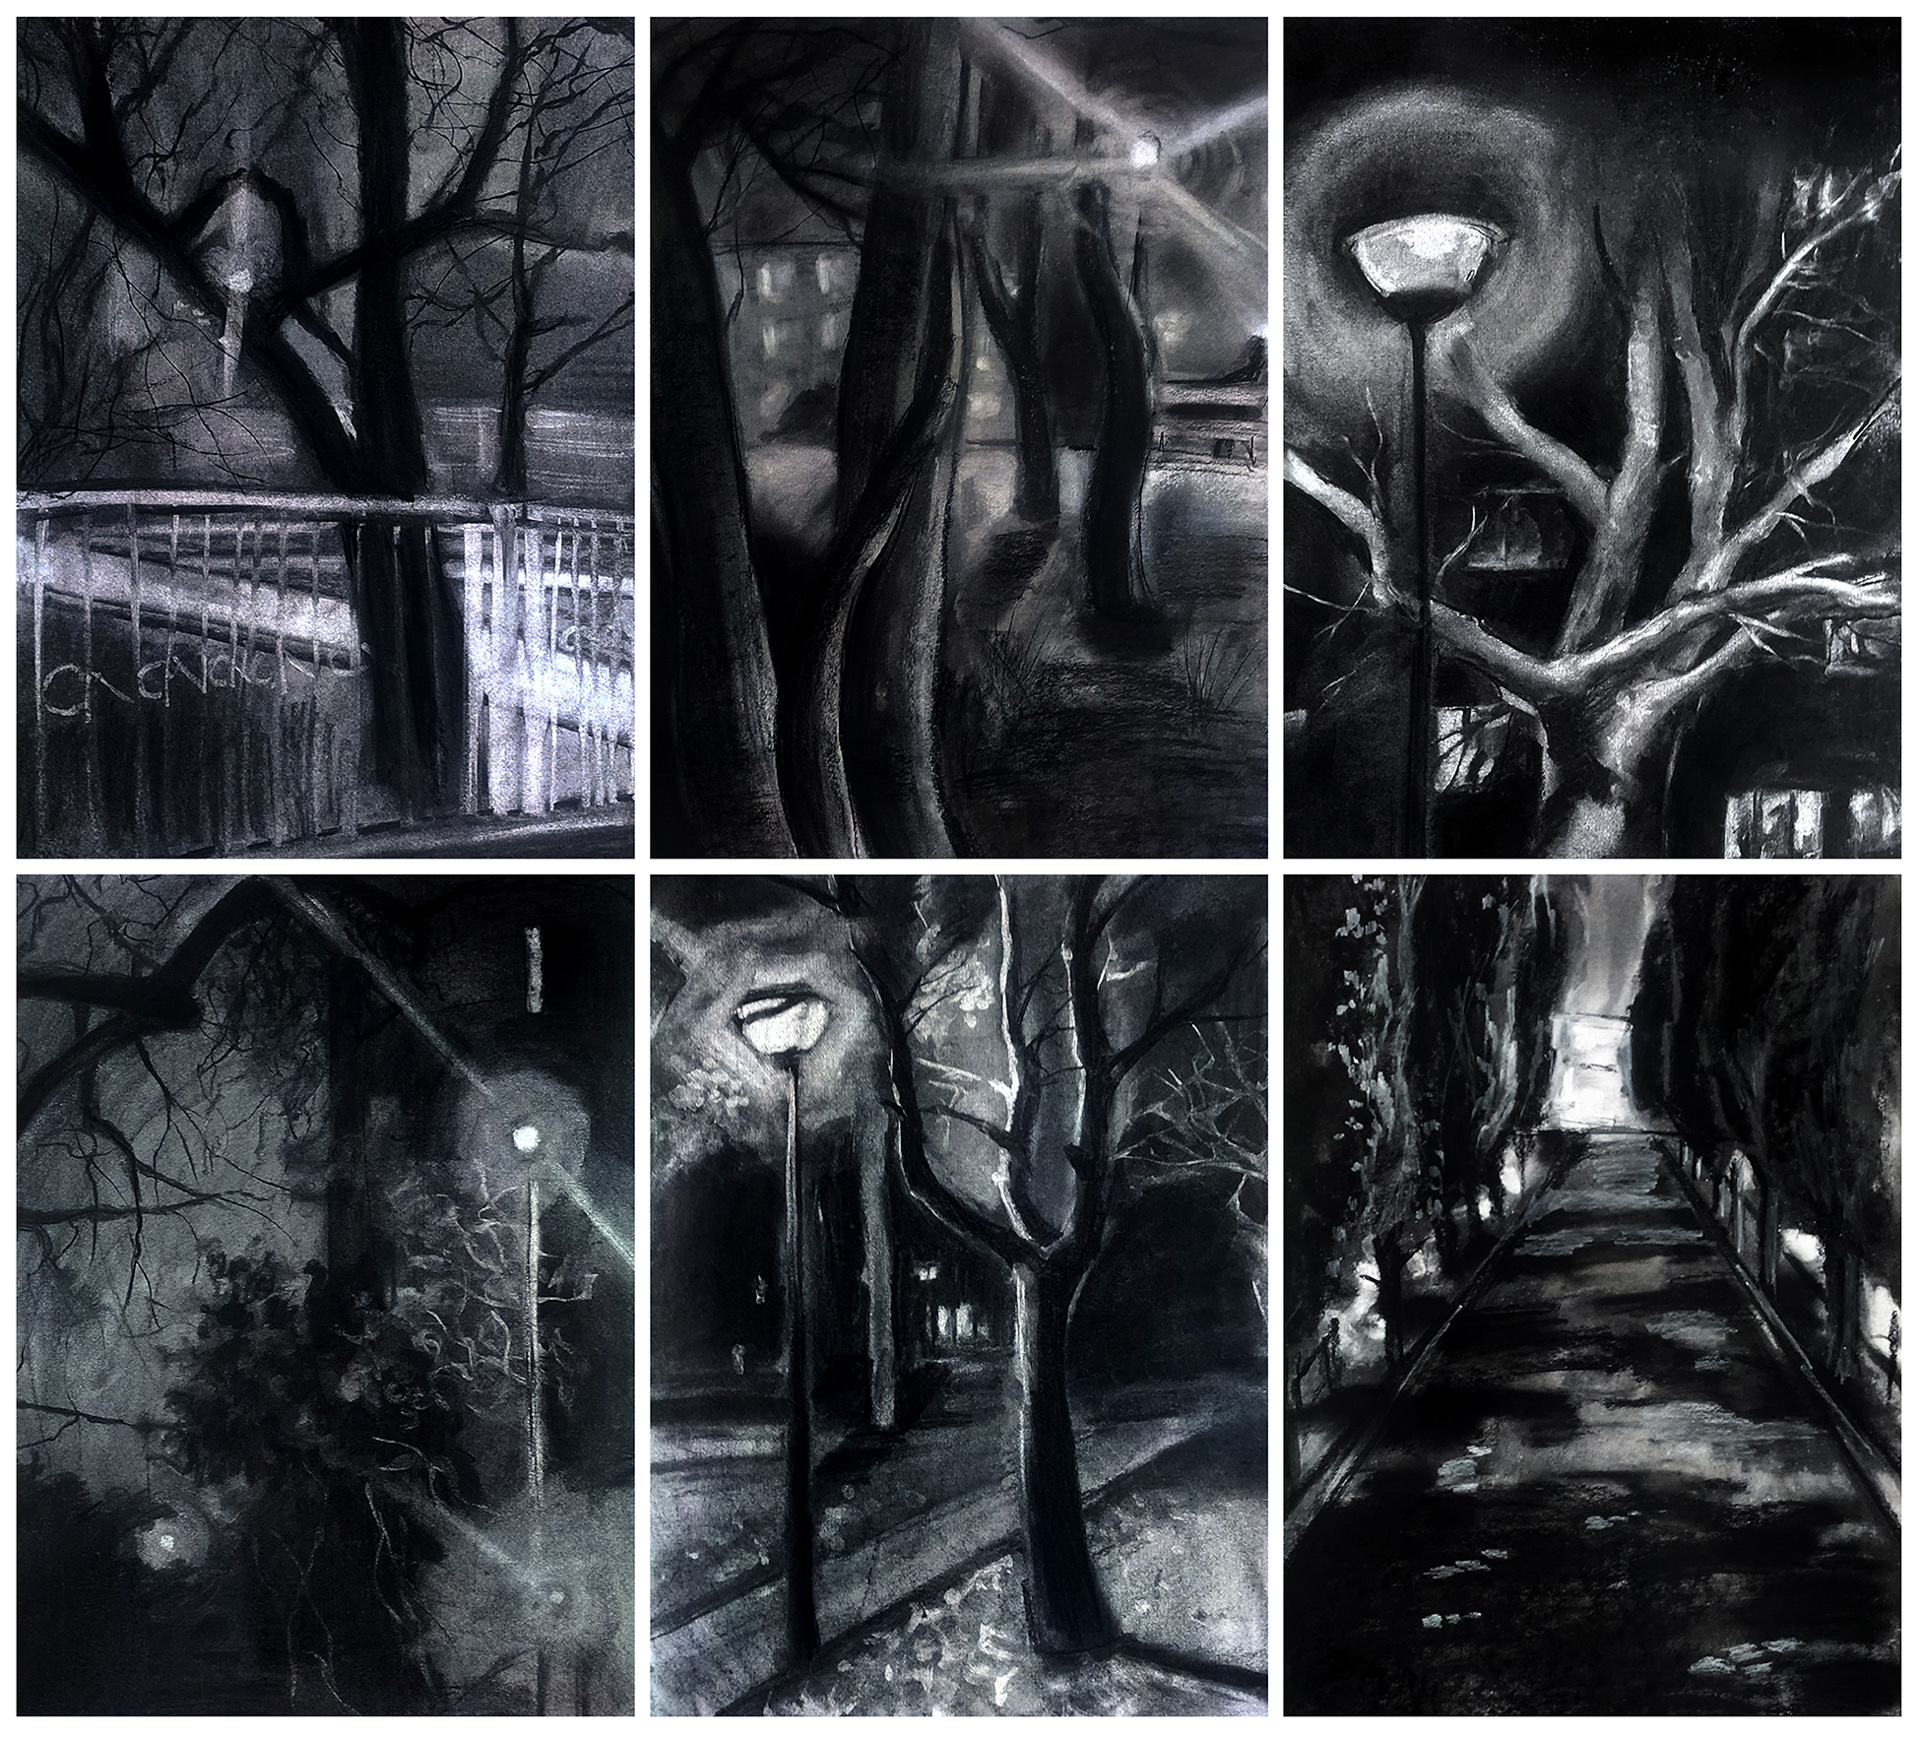 Praca składa się z 6 rysunków przedstawiających kadry miasta nocą. Rysunki zostały wykonane węglem na papierze o wymiarach 50 na 35 cm.